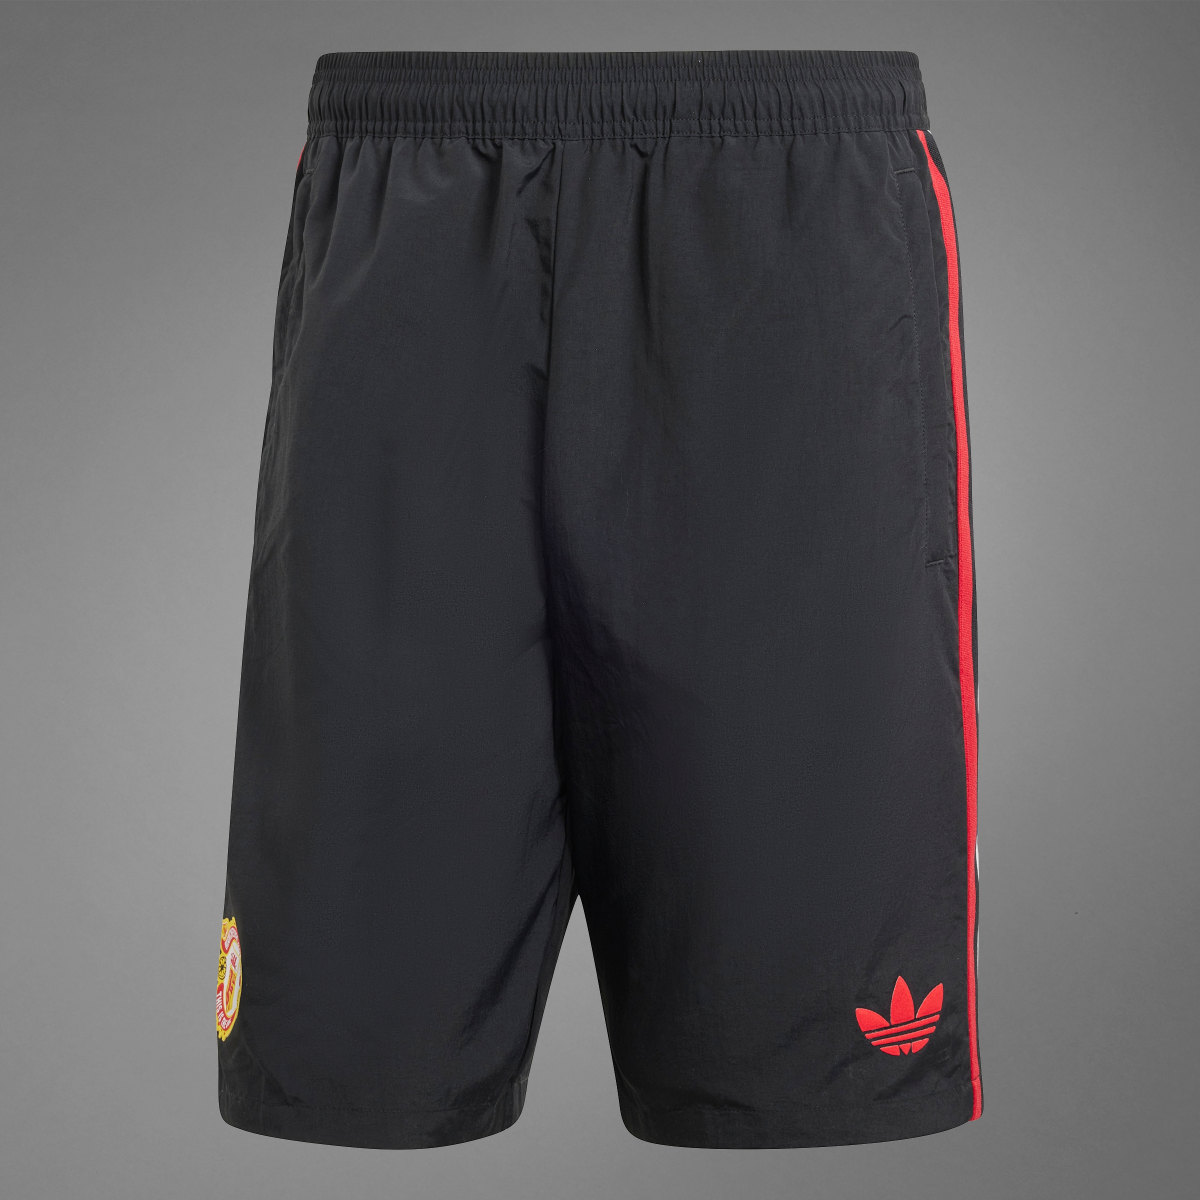 Adidas Short Manchester United Stone Roses Originals. 11